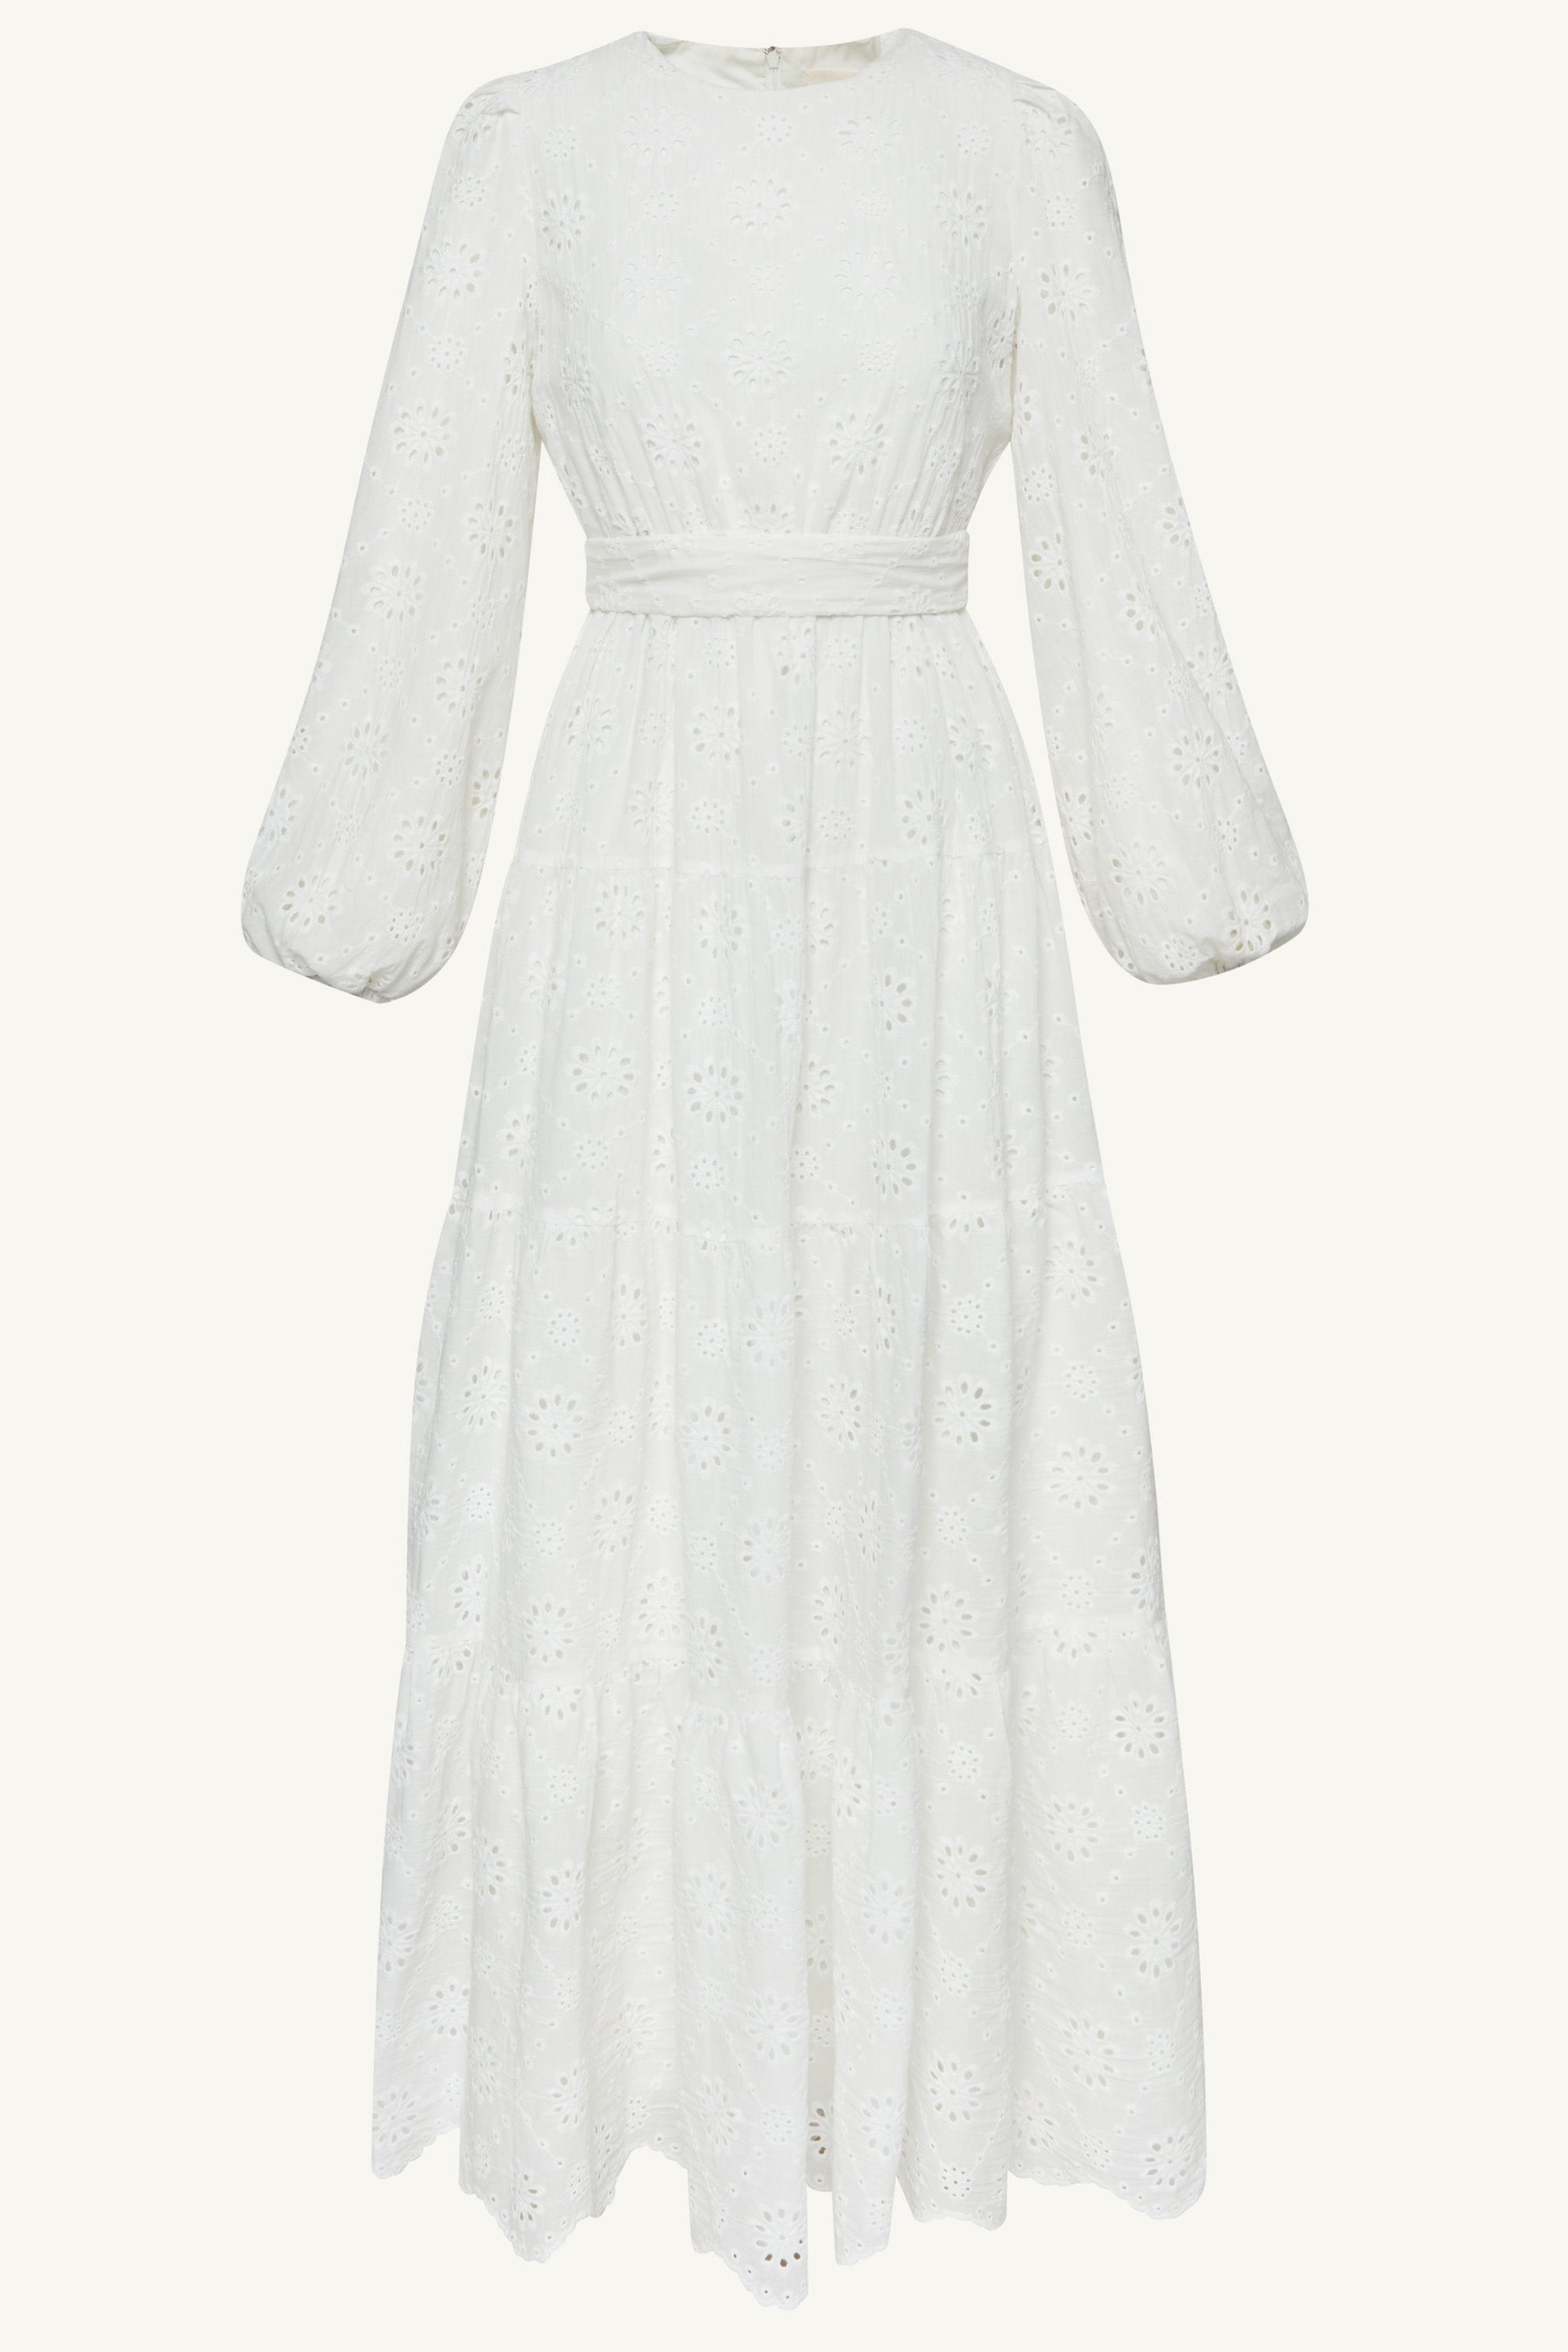 Zaynab White Eyelet Maxi Dress Clothing Veiled 